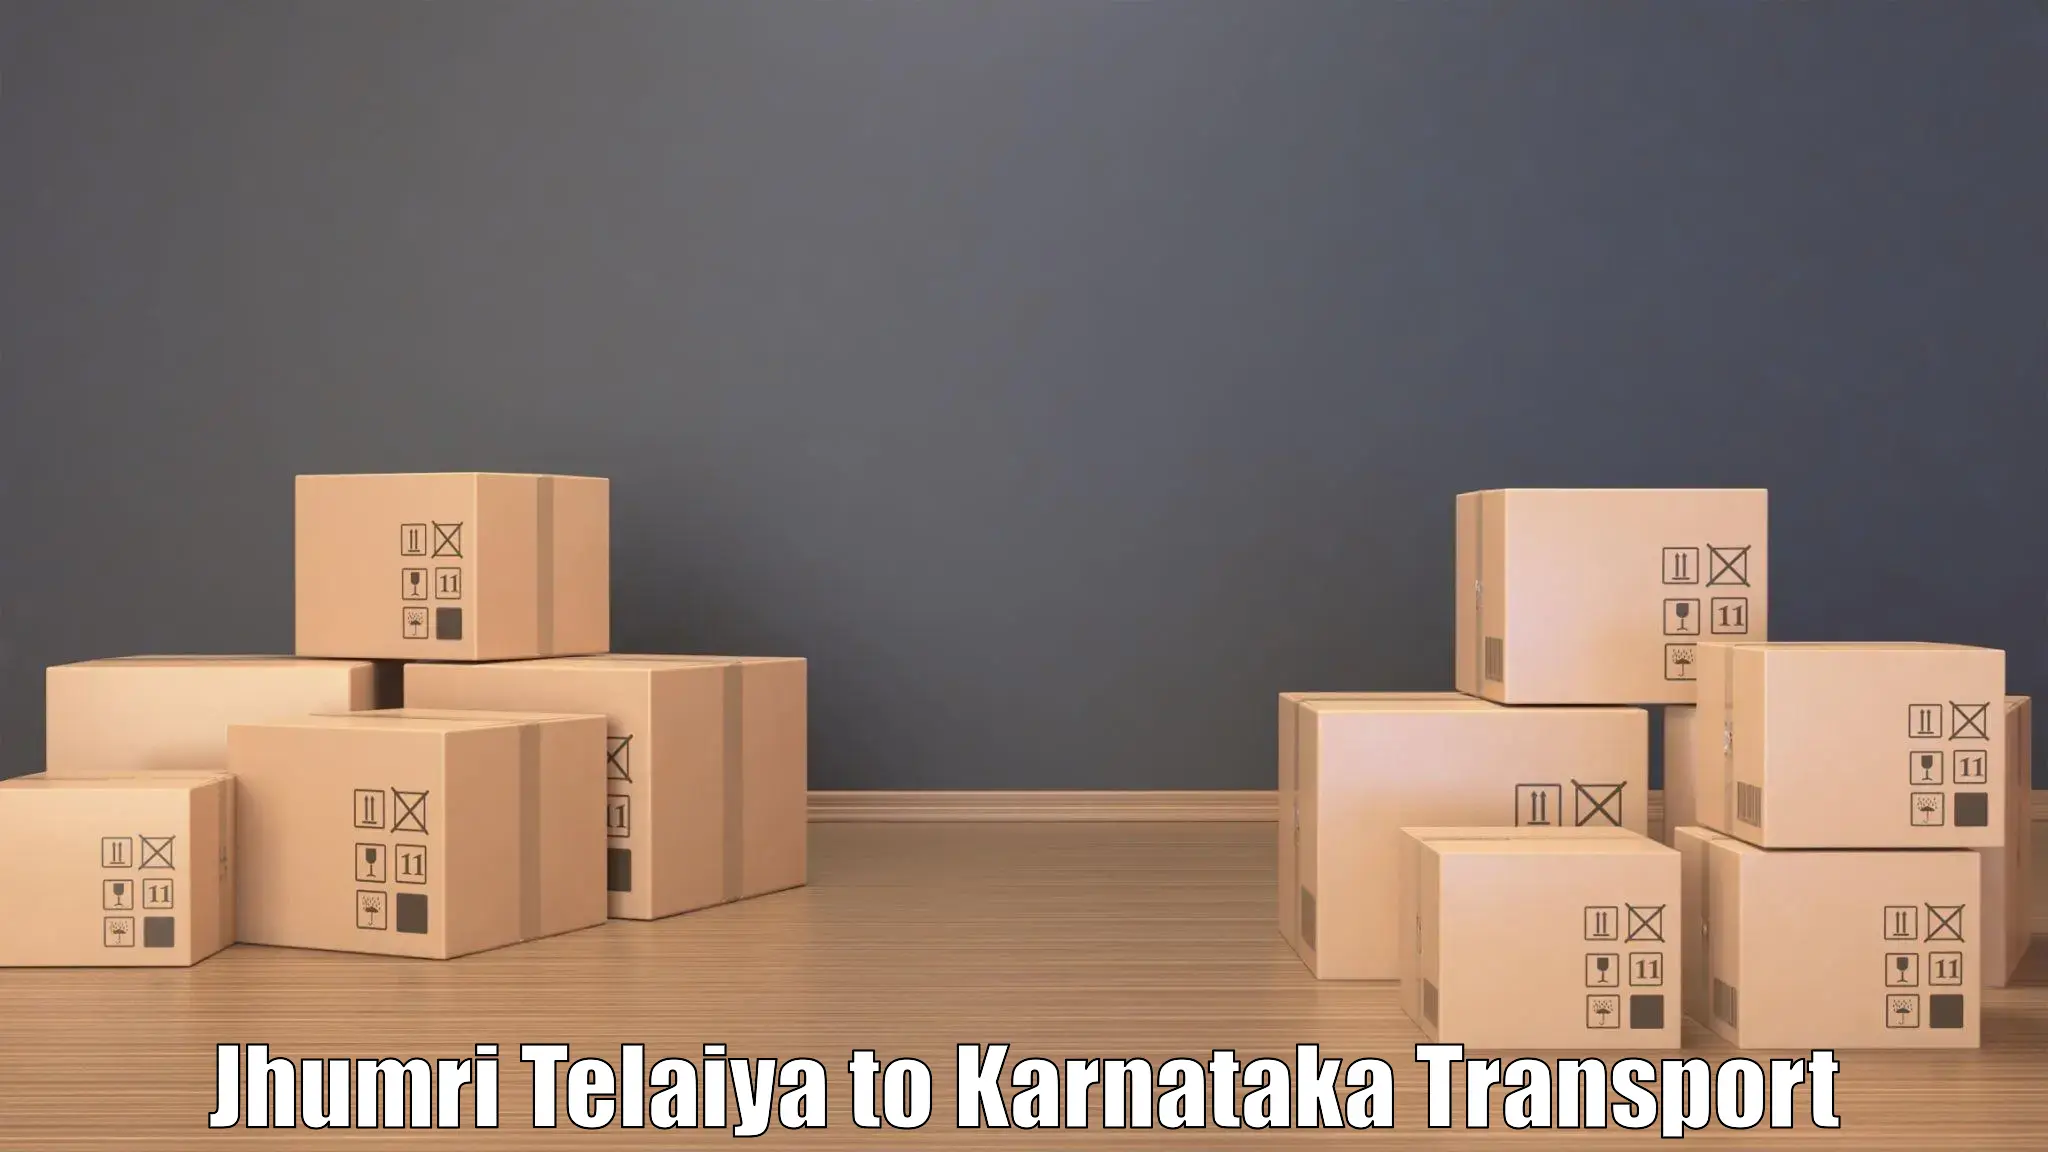 Online transport booking Jhumri Telaiya to Deodurga